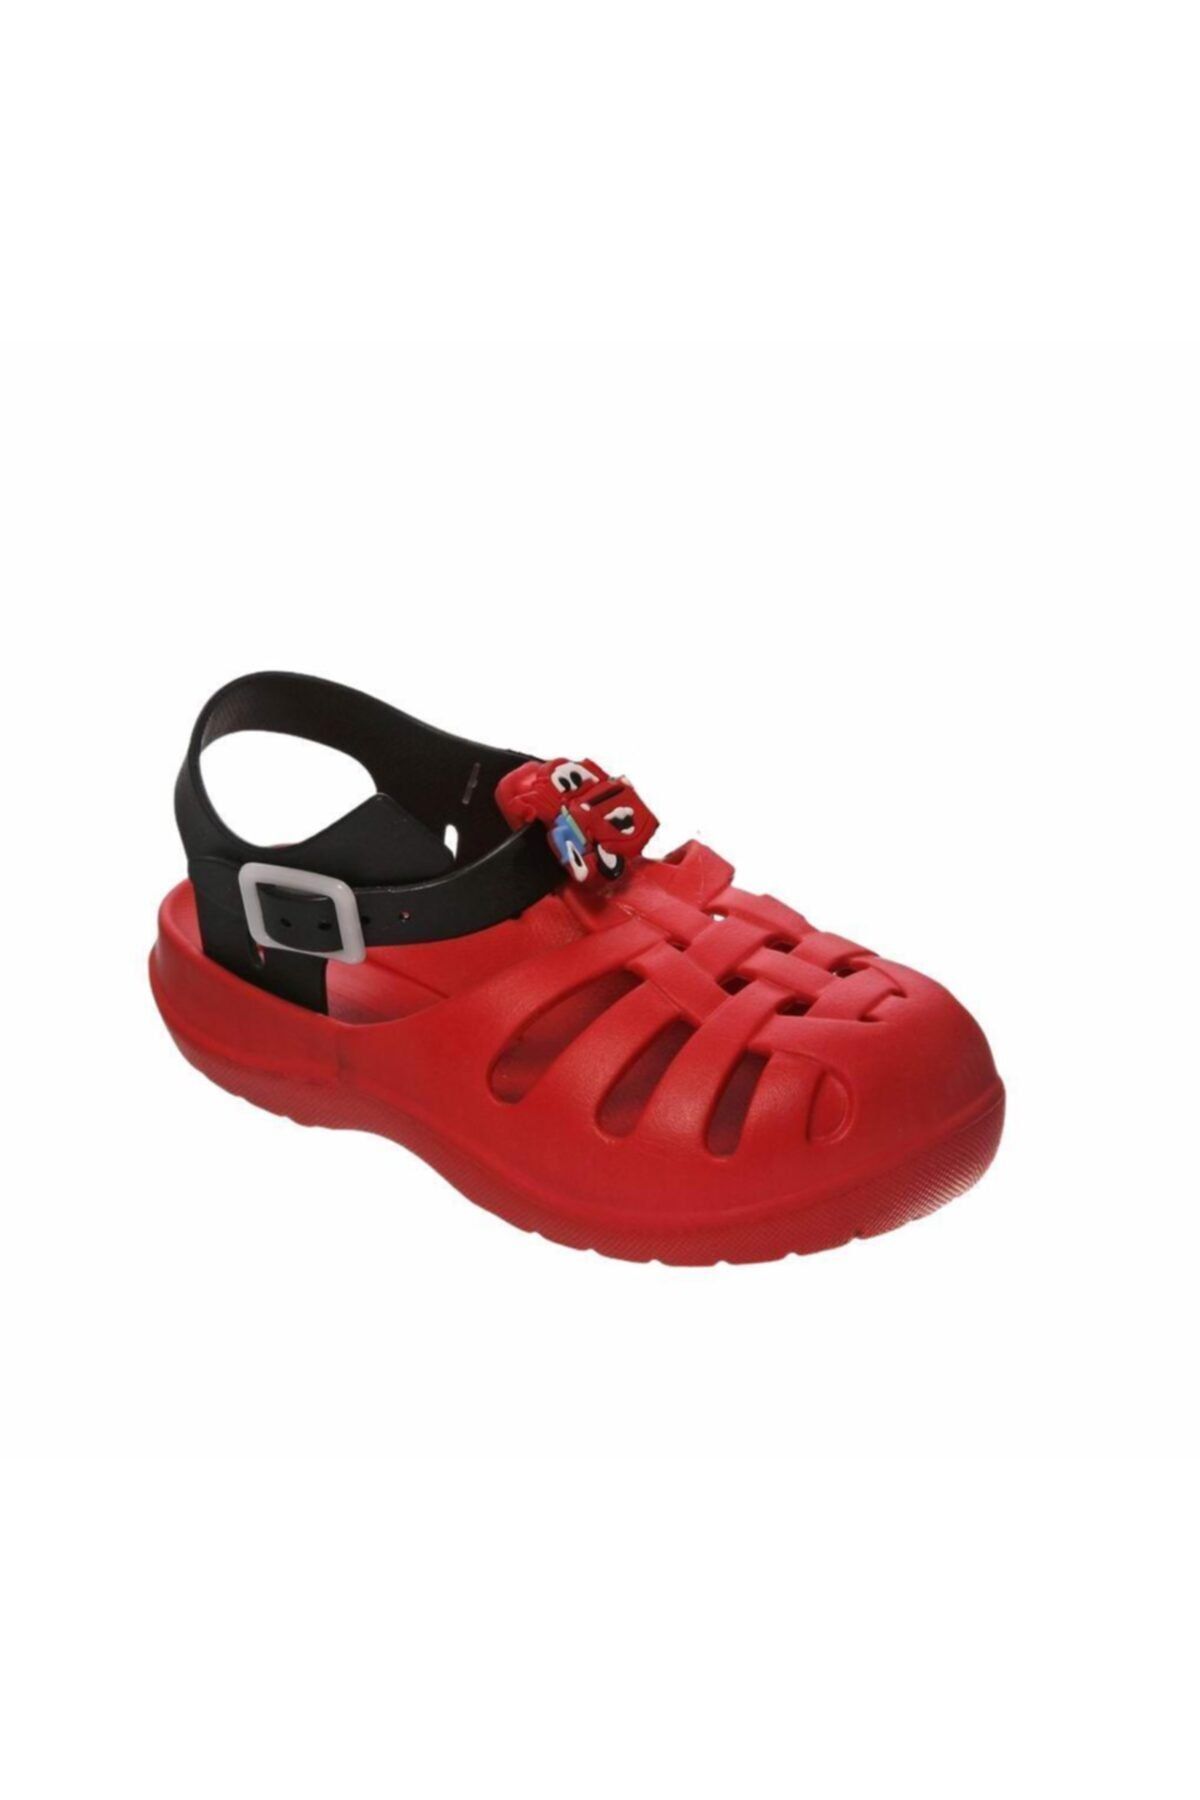 Sanbe 900 L 1902 23-30 Aqua Sandalet Kırmızı